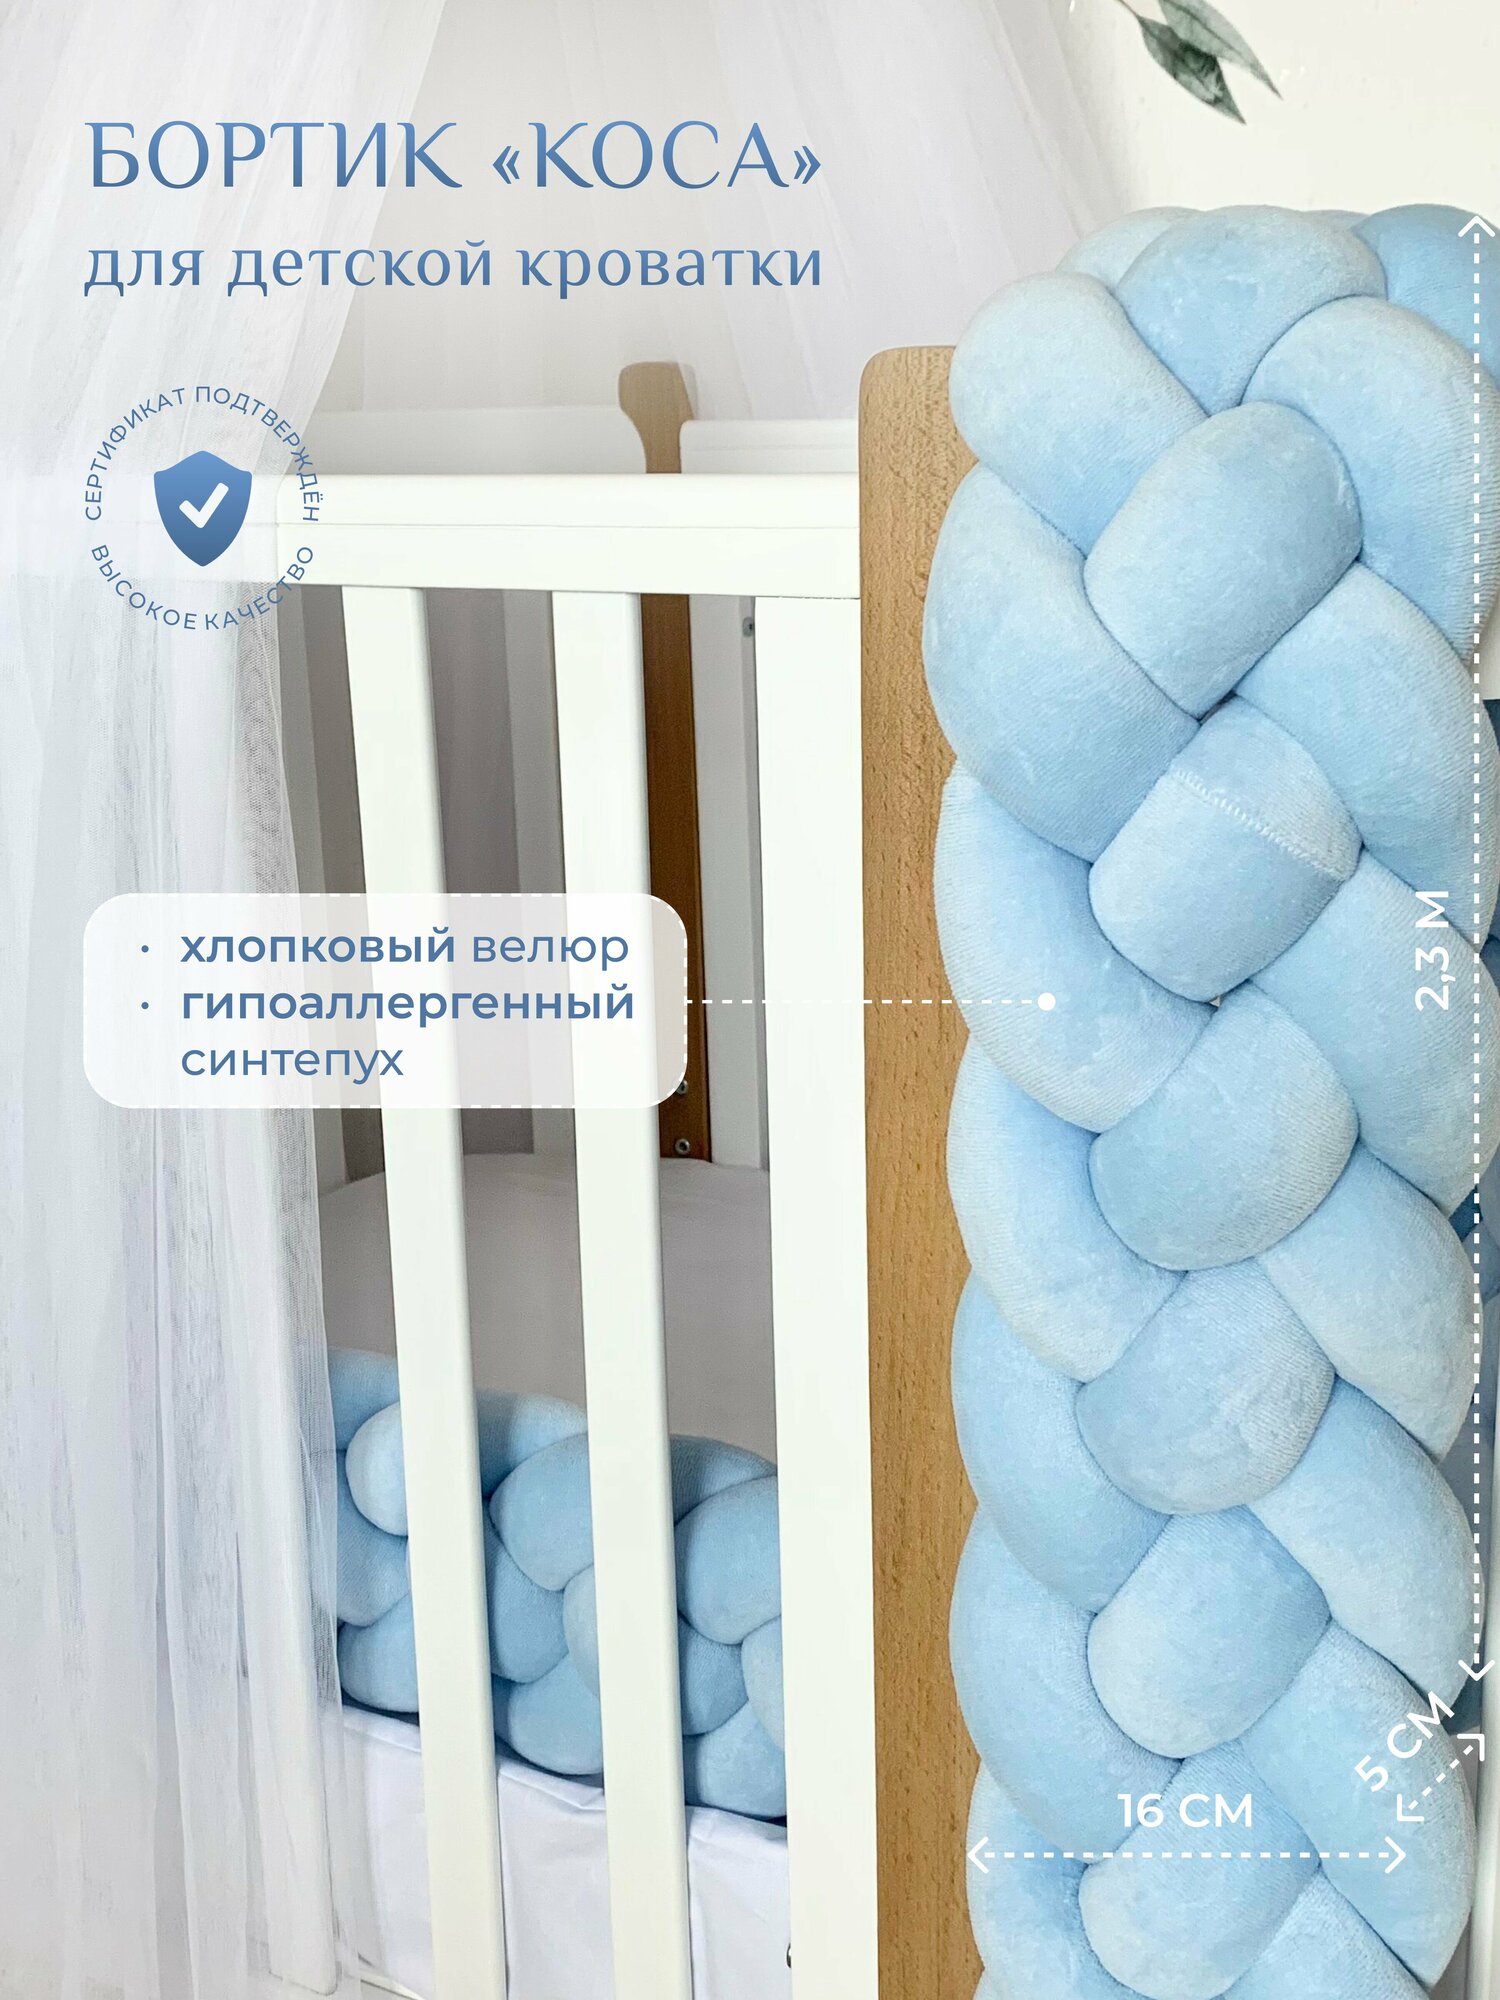 Бортик для детской кровати "Коса", 4 ленты, Childrens-Textiles, хлопковый велюр, 2.3 м, цвет - голубой